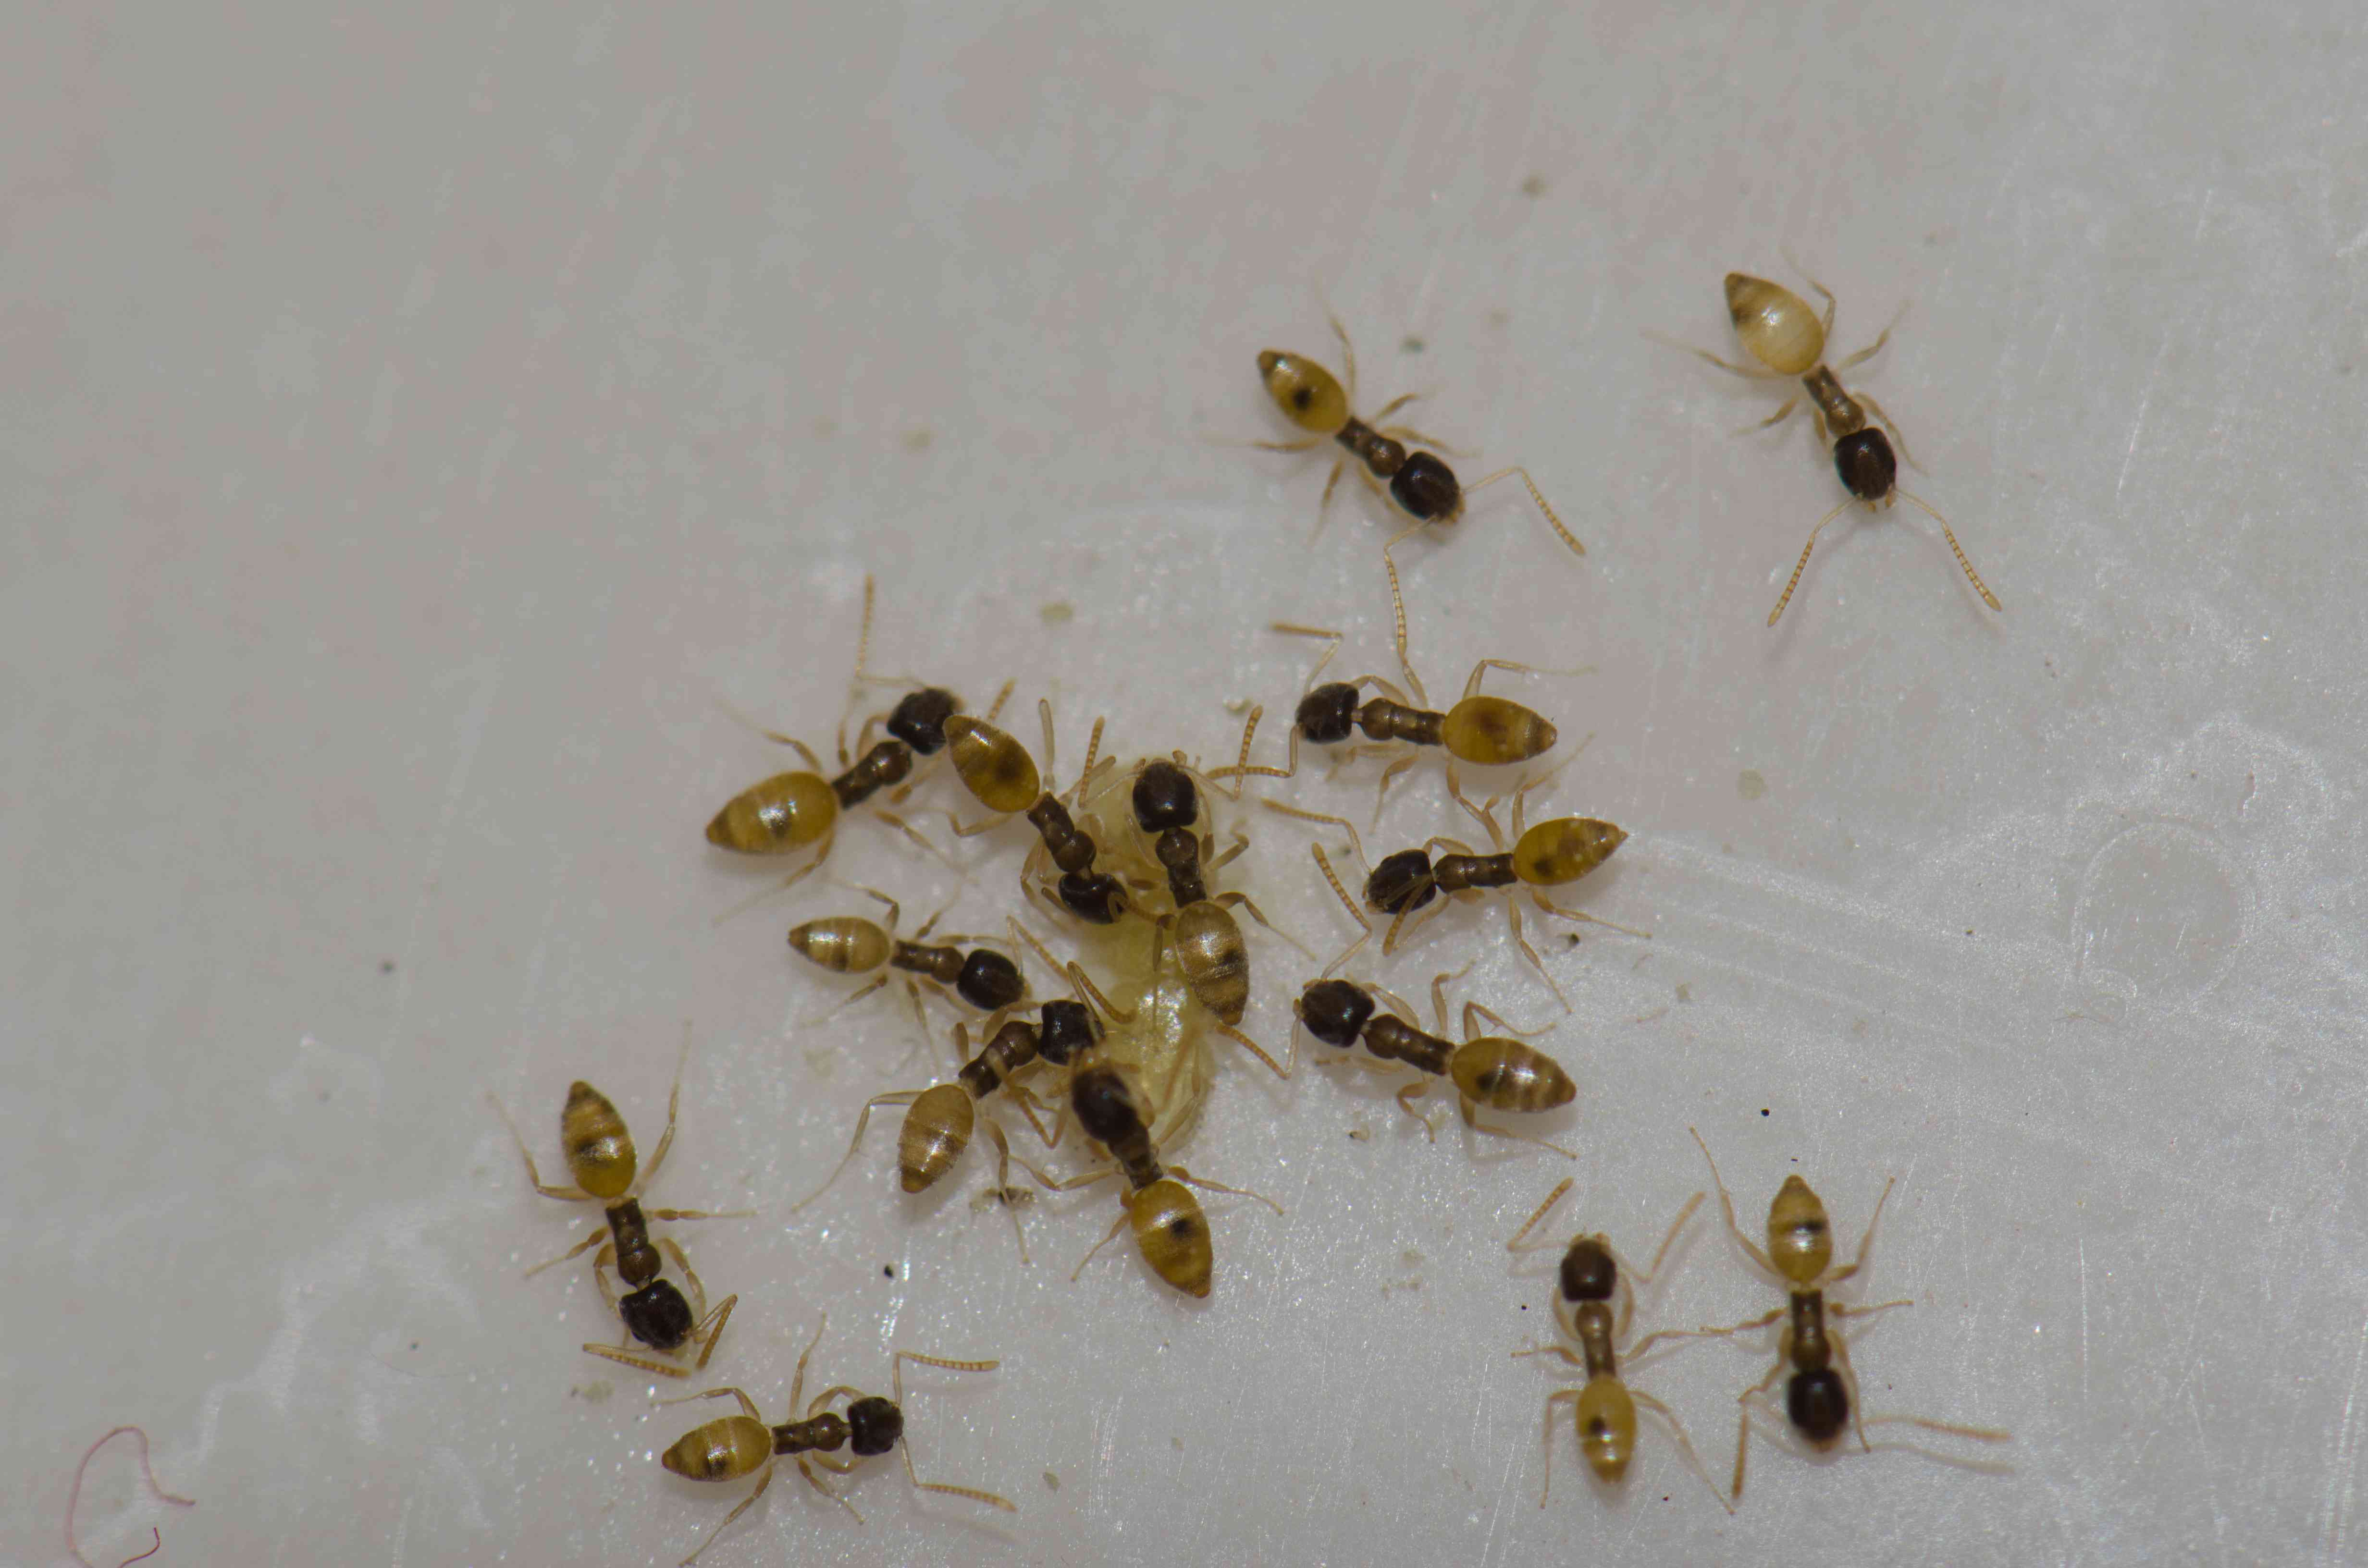 幽灵蚂蚁(Tapinoma melanocephalum)以食物残渣为食。